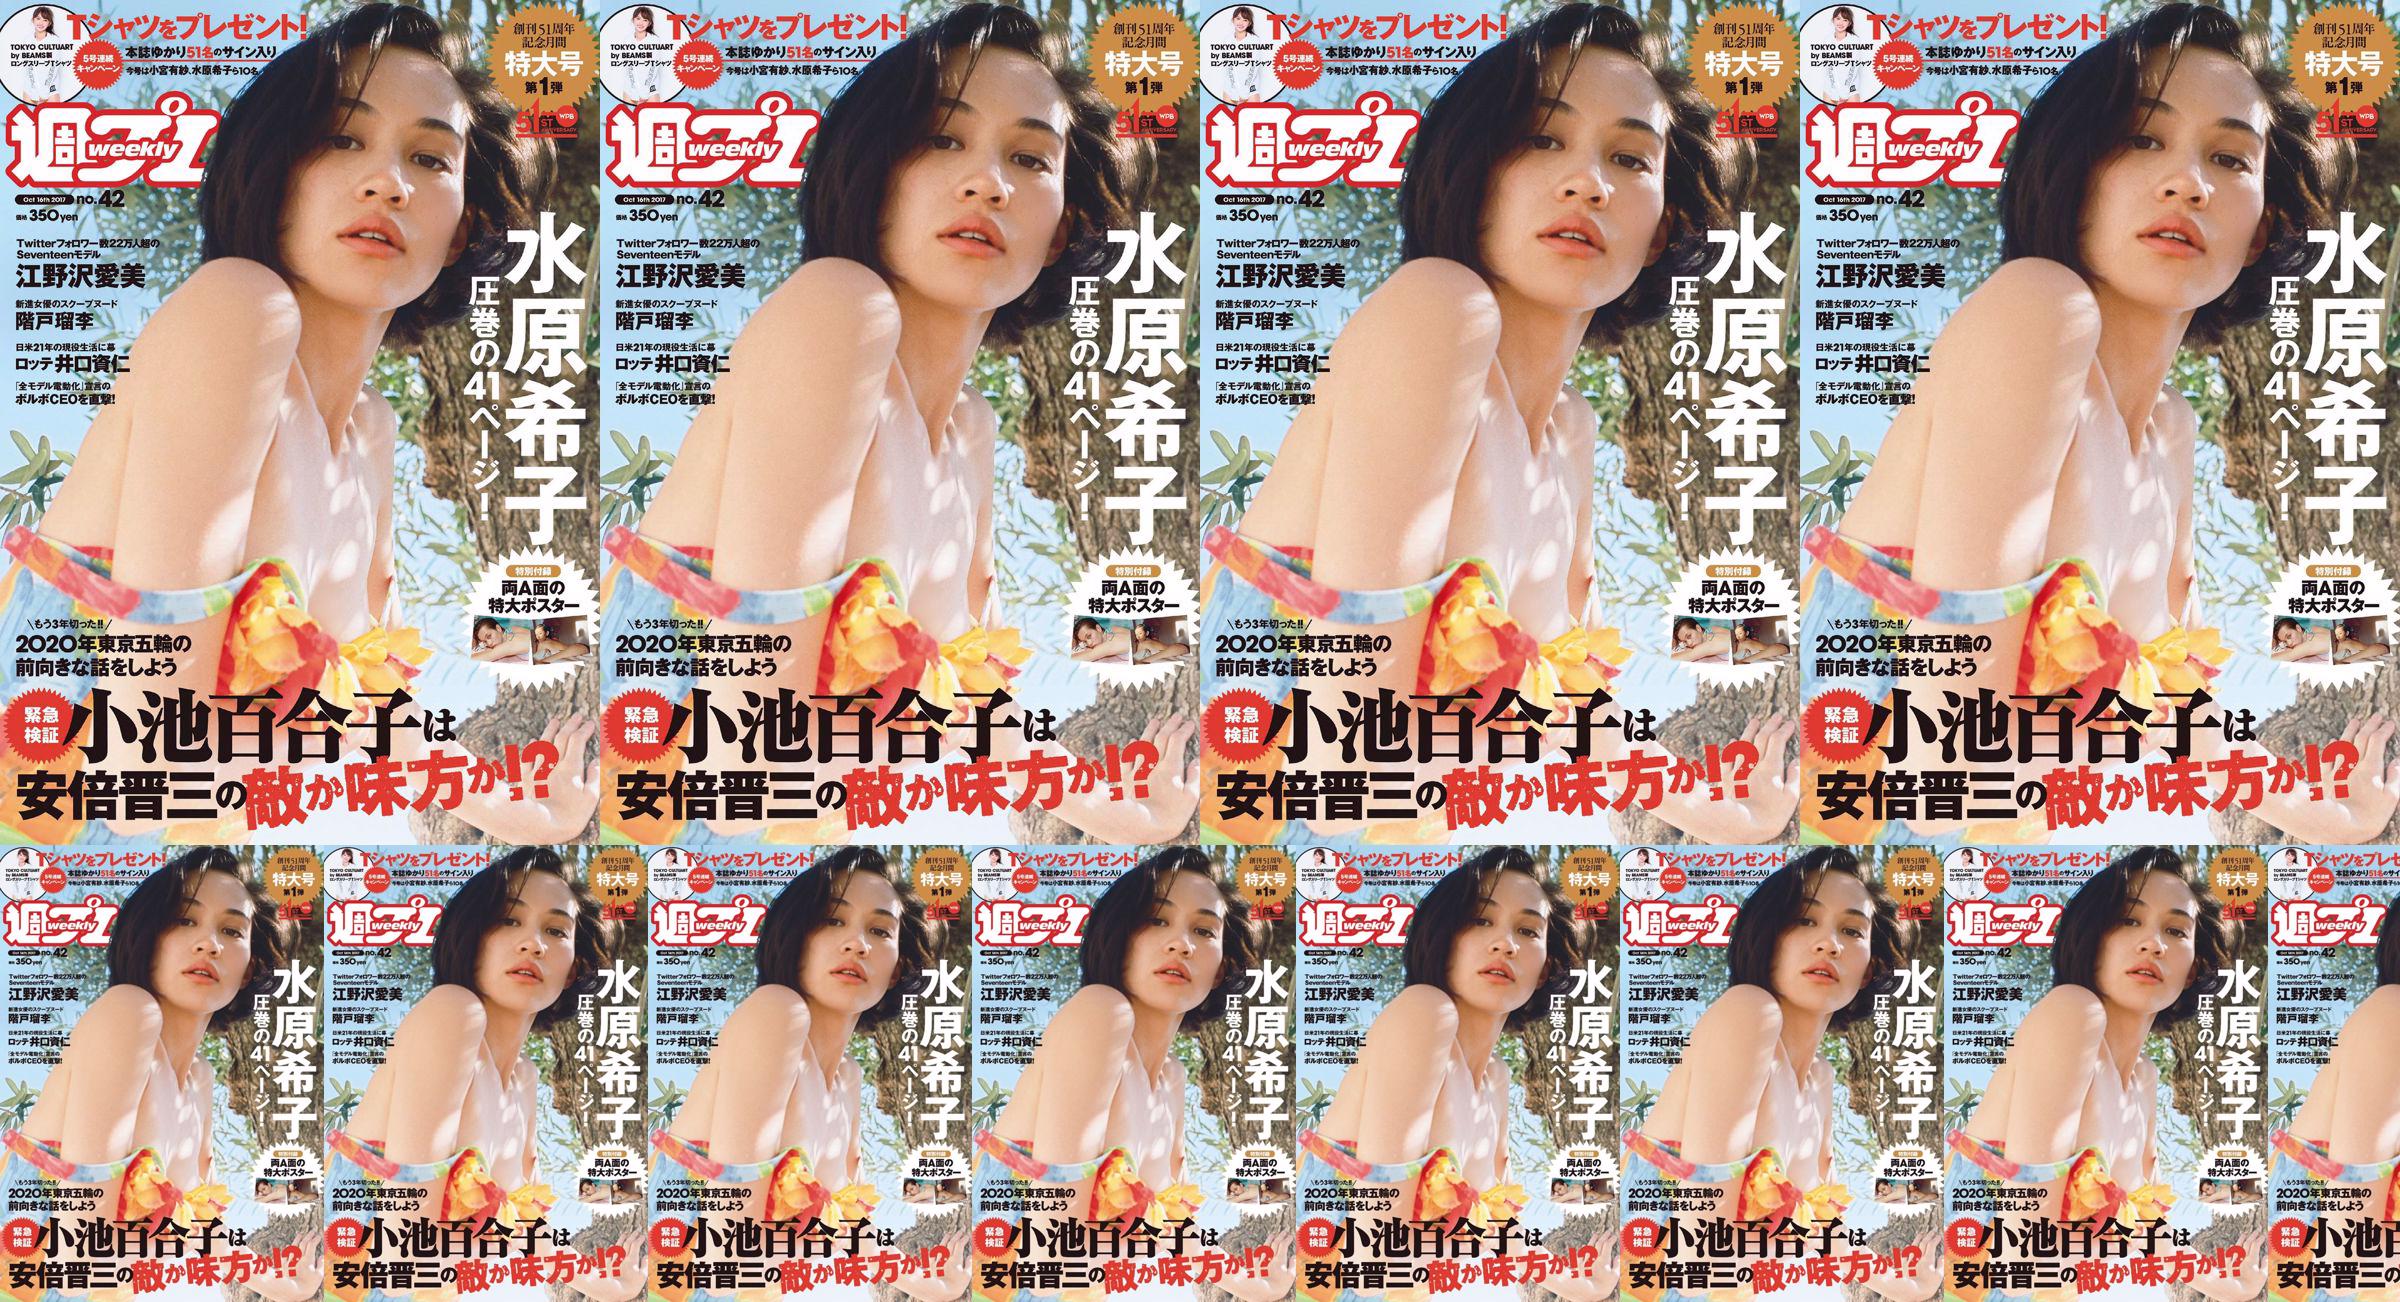 Kiko Mizuhara Manami Enosawa Serina Fukui Miu Nakamura Ruri Shinato [Weekly Playboy] 2017 No.42 Photo Magazine No.8ab26d Page 2